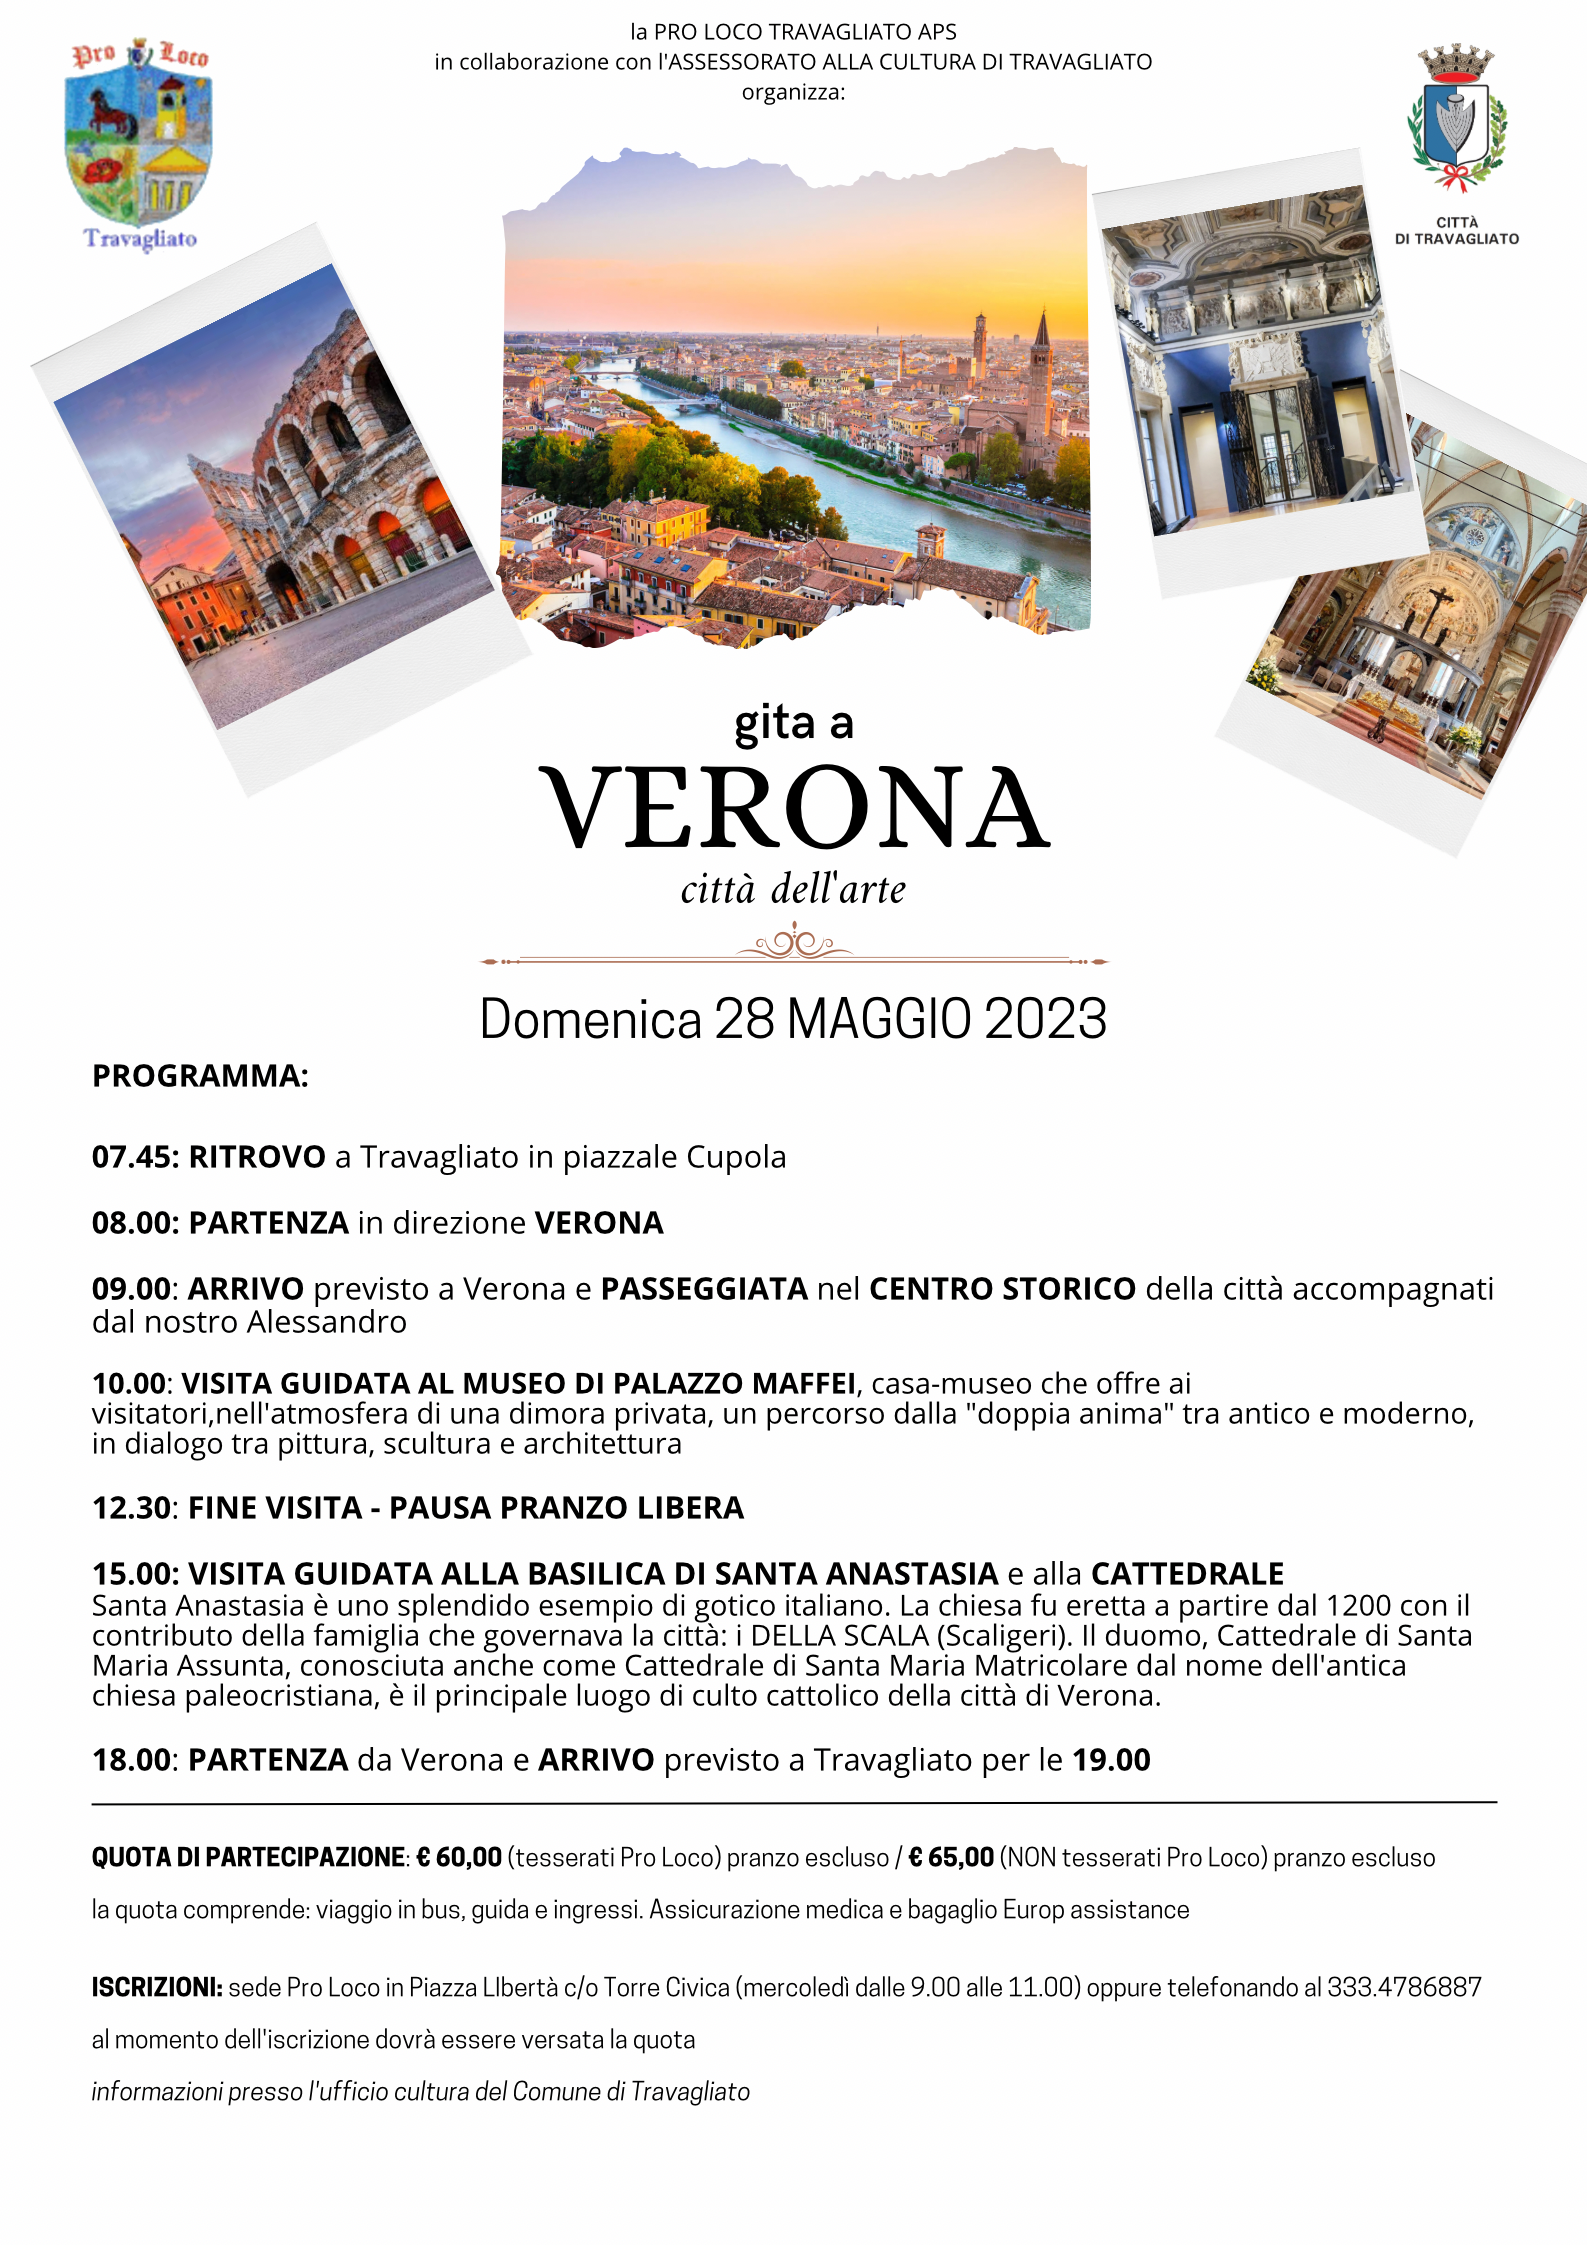 Gita a Verona